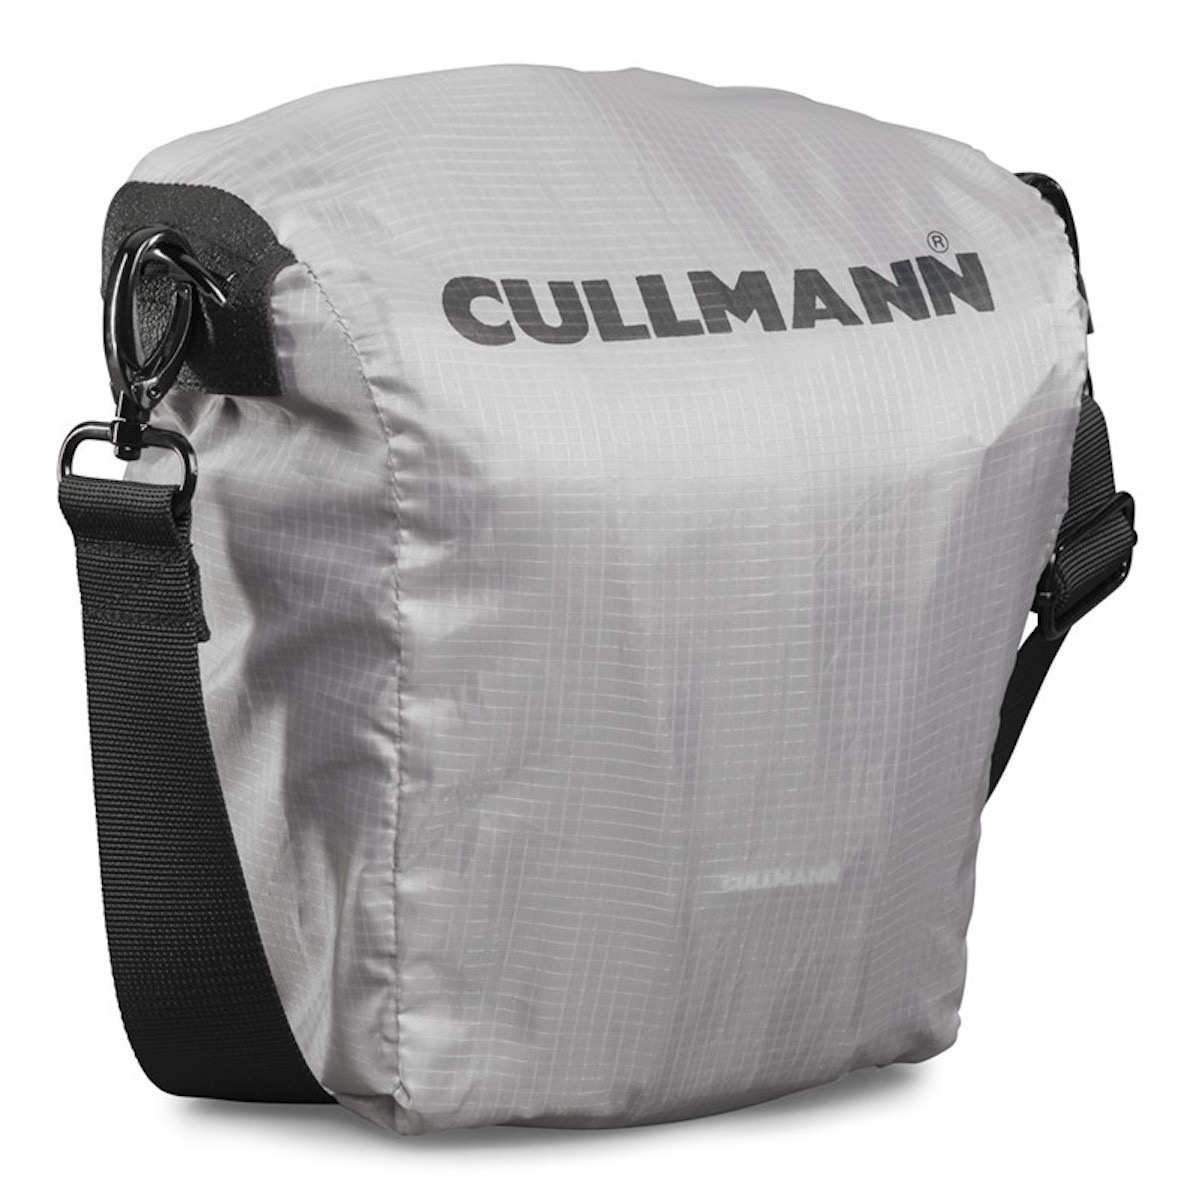 Cullmann Sydney pro Action 300 Kamera Tasche